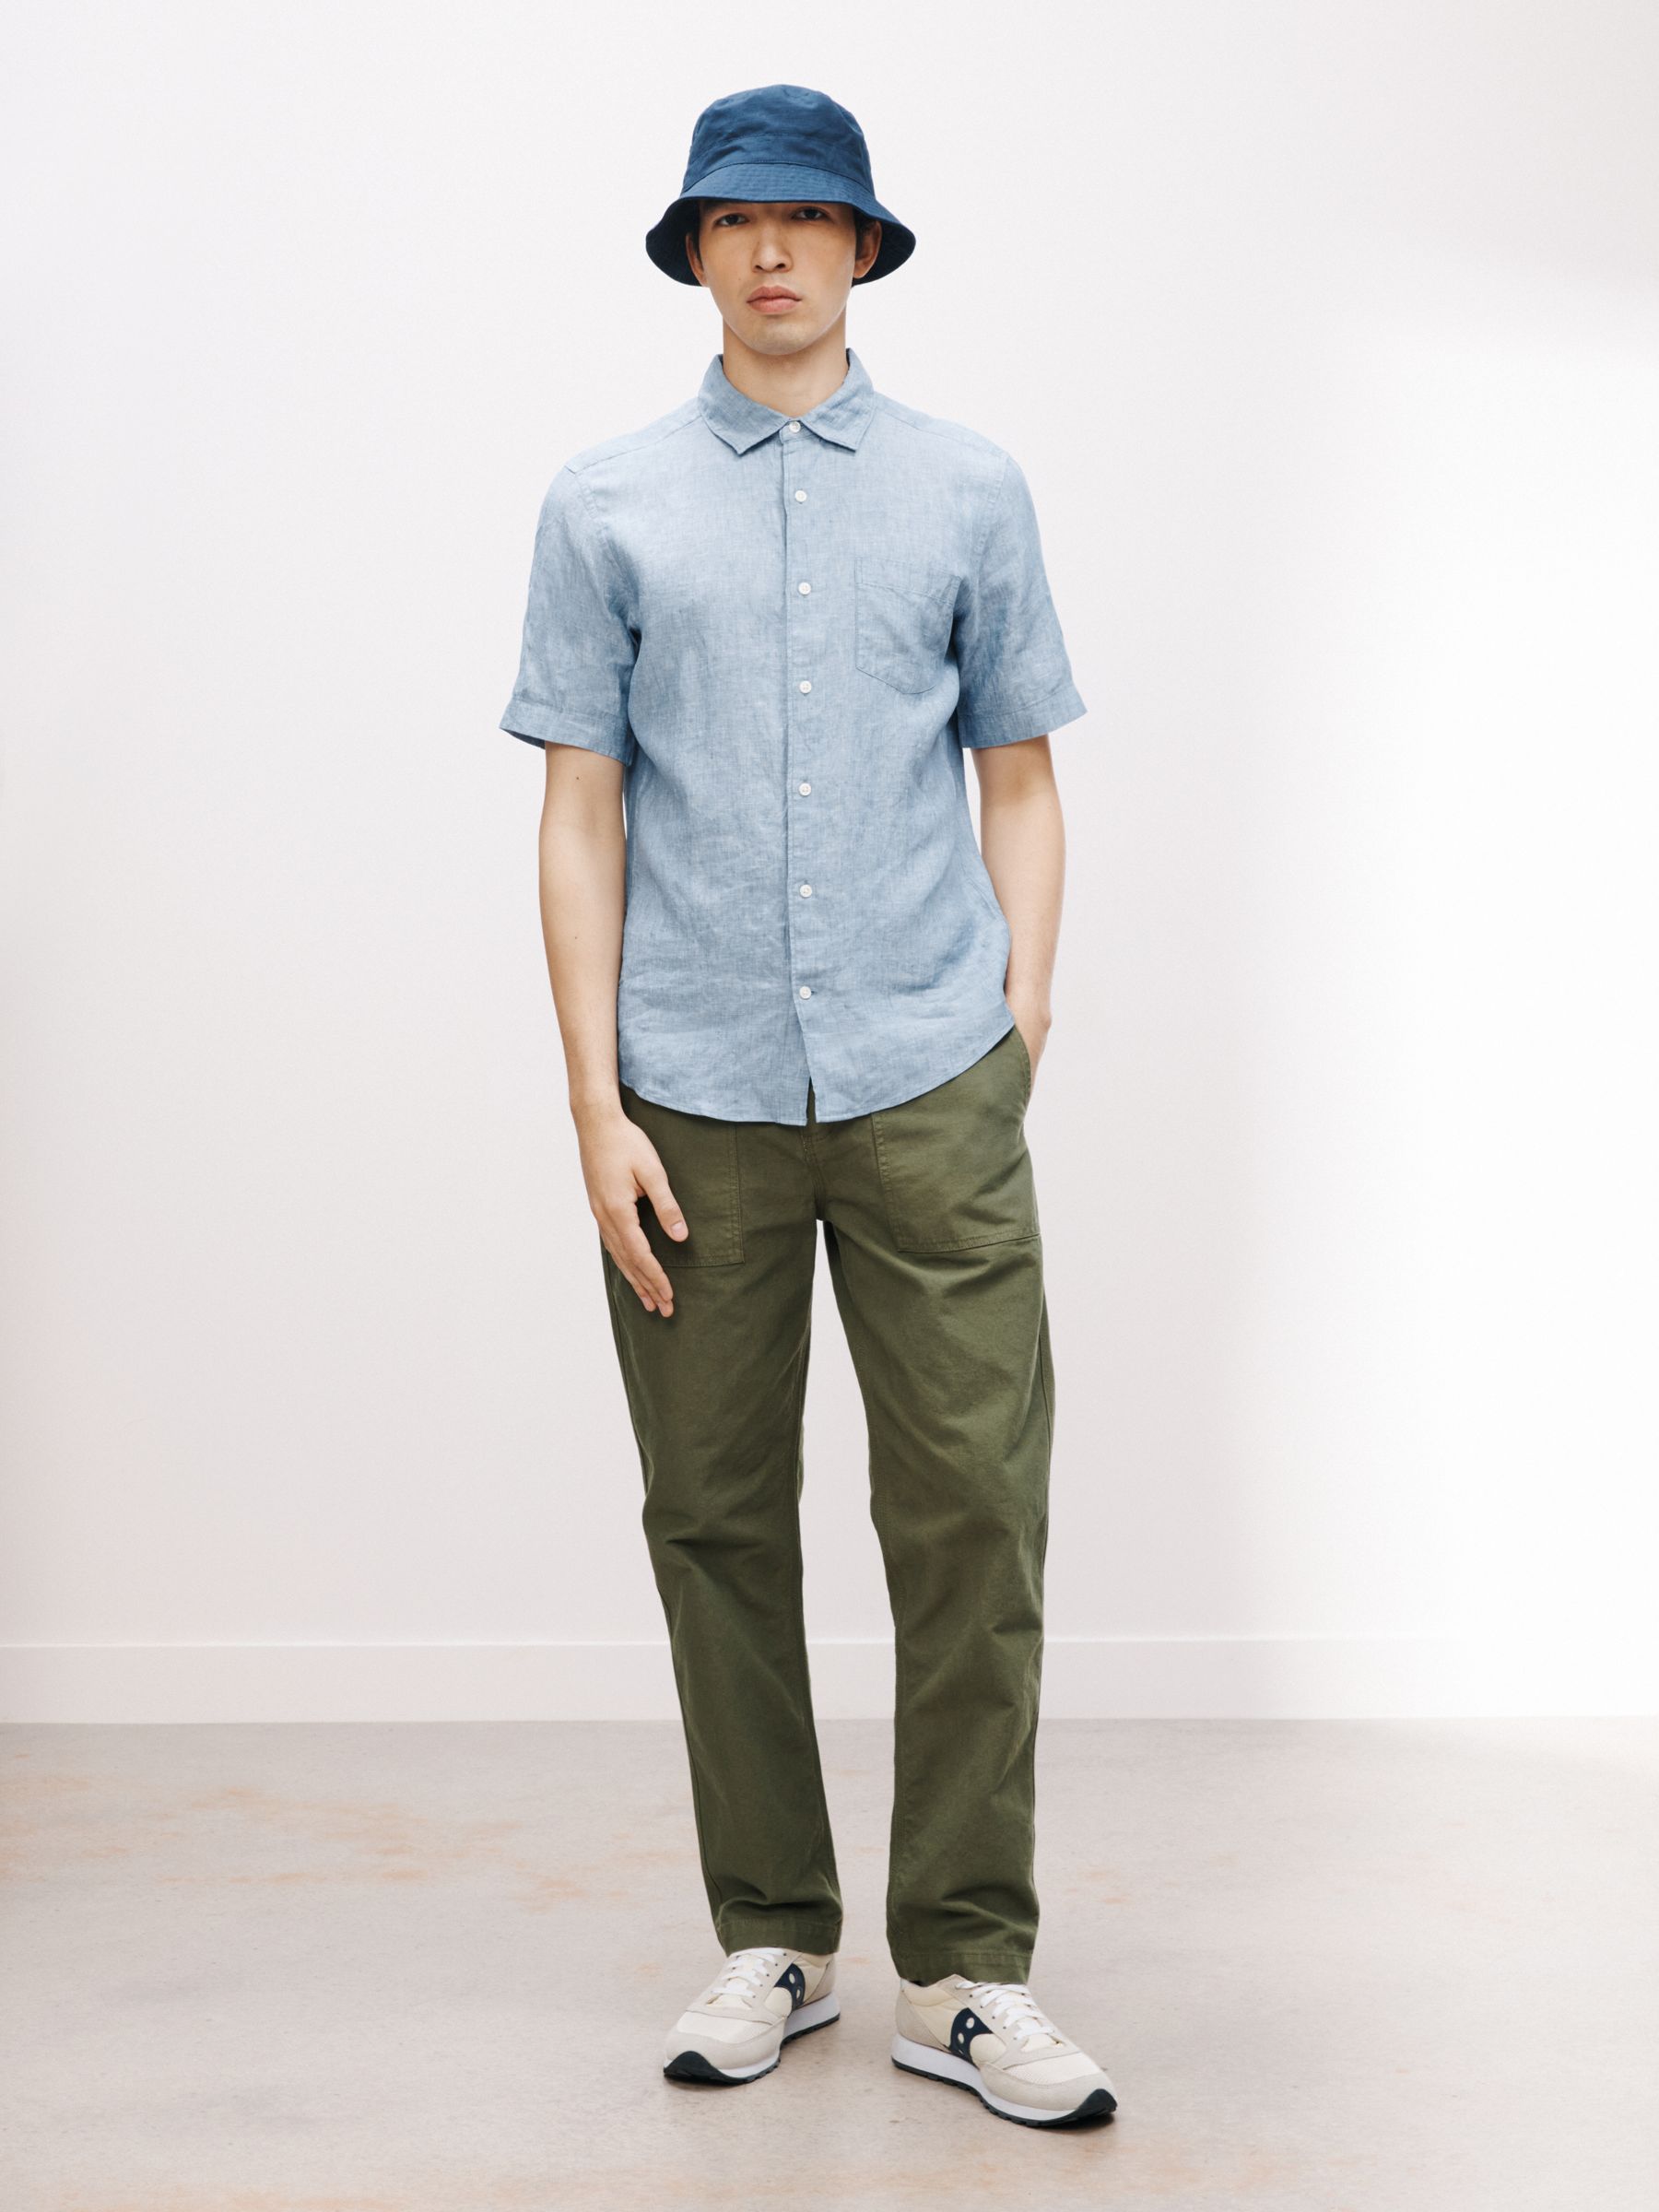 John Lewis Linen Regular Fit Shirt, China Blue, S